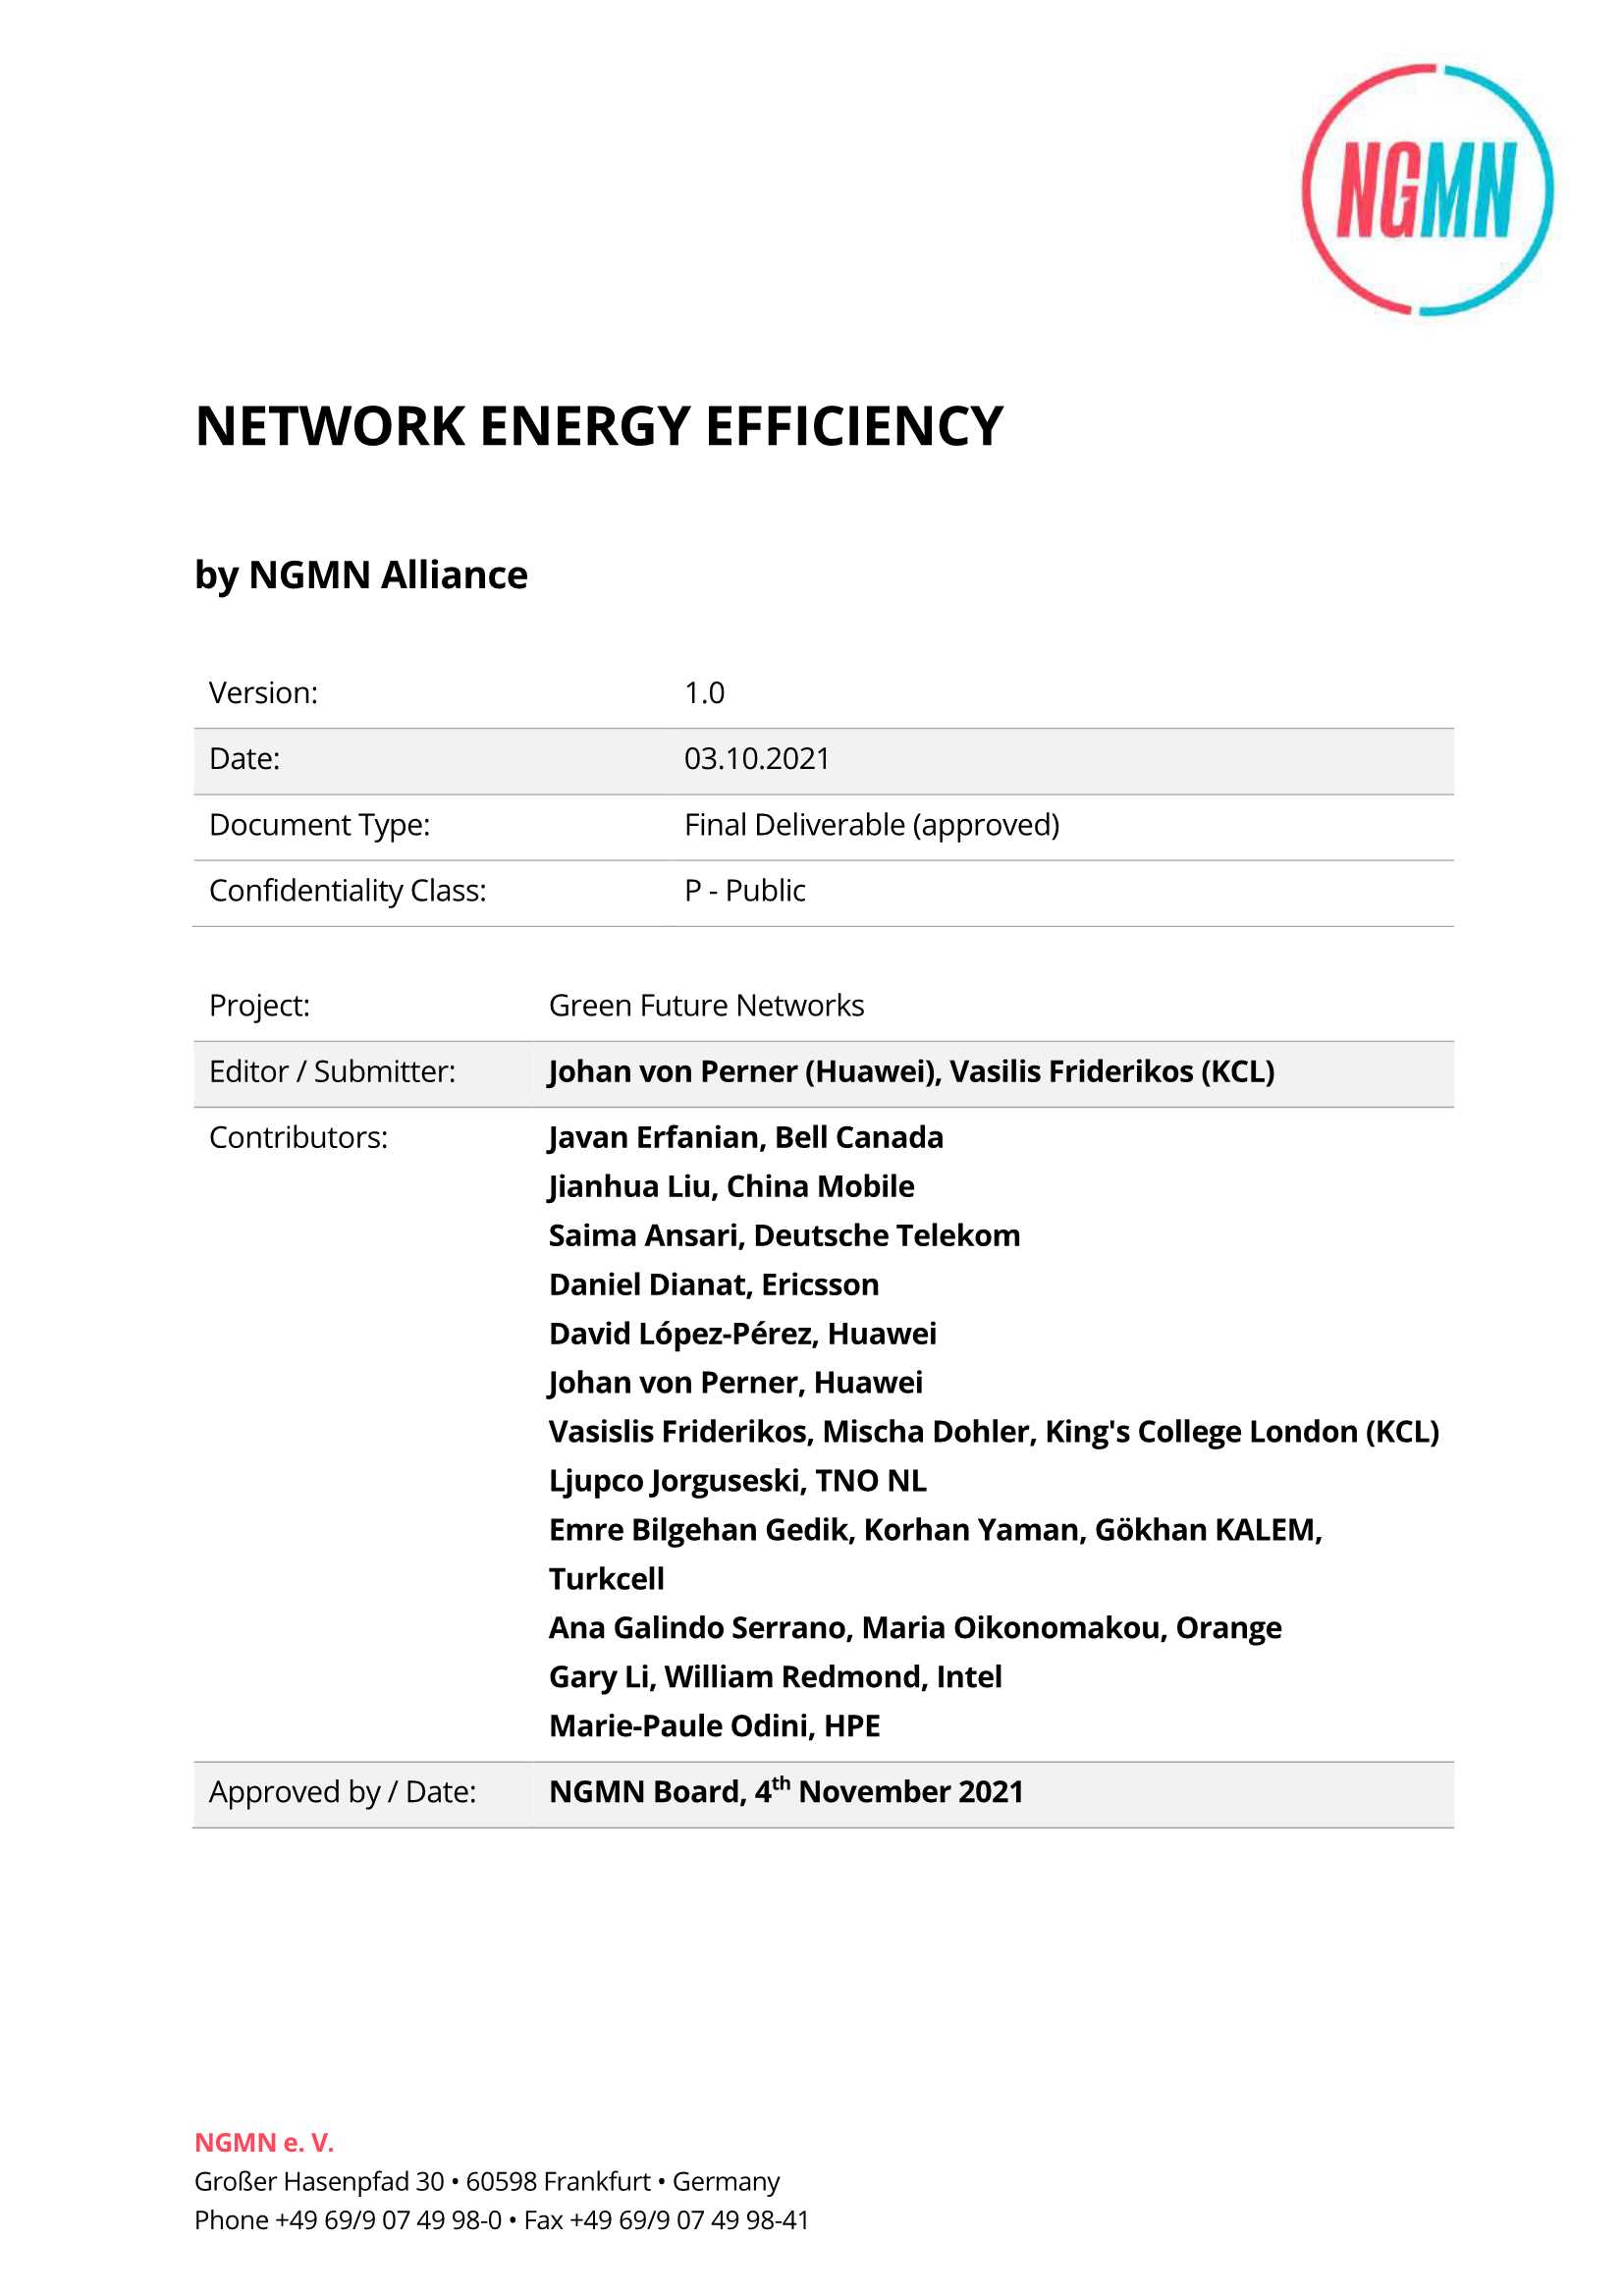 绿色未来网络—网络能源效率白皮书-2021.11-56页